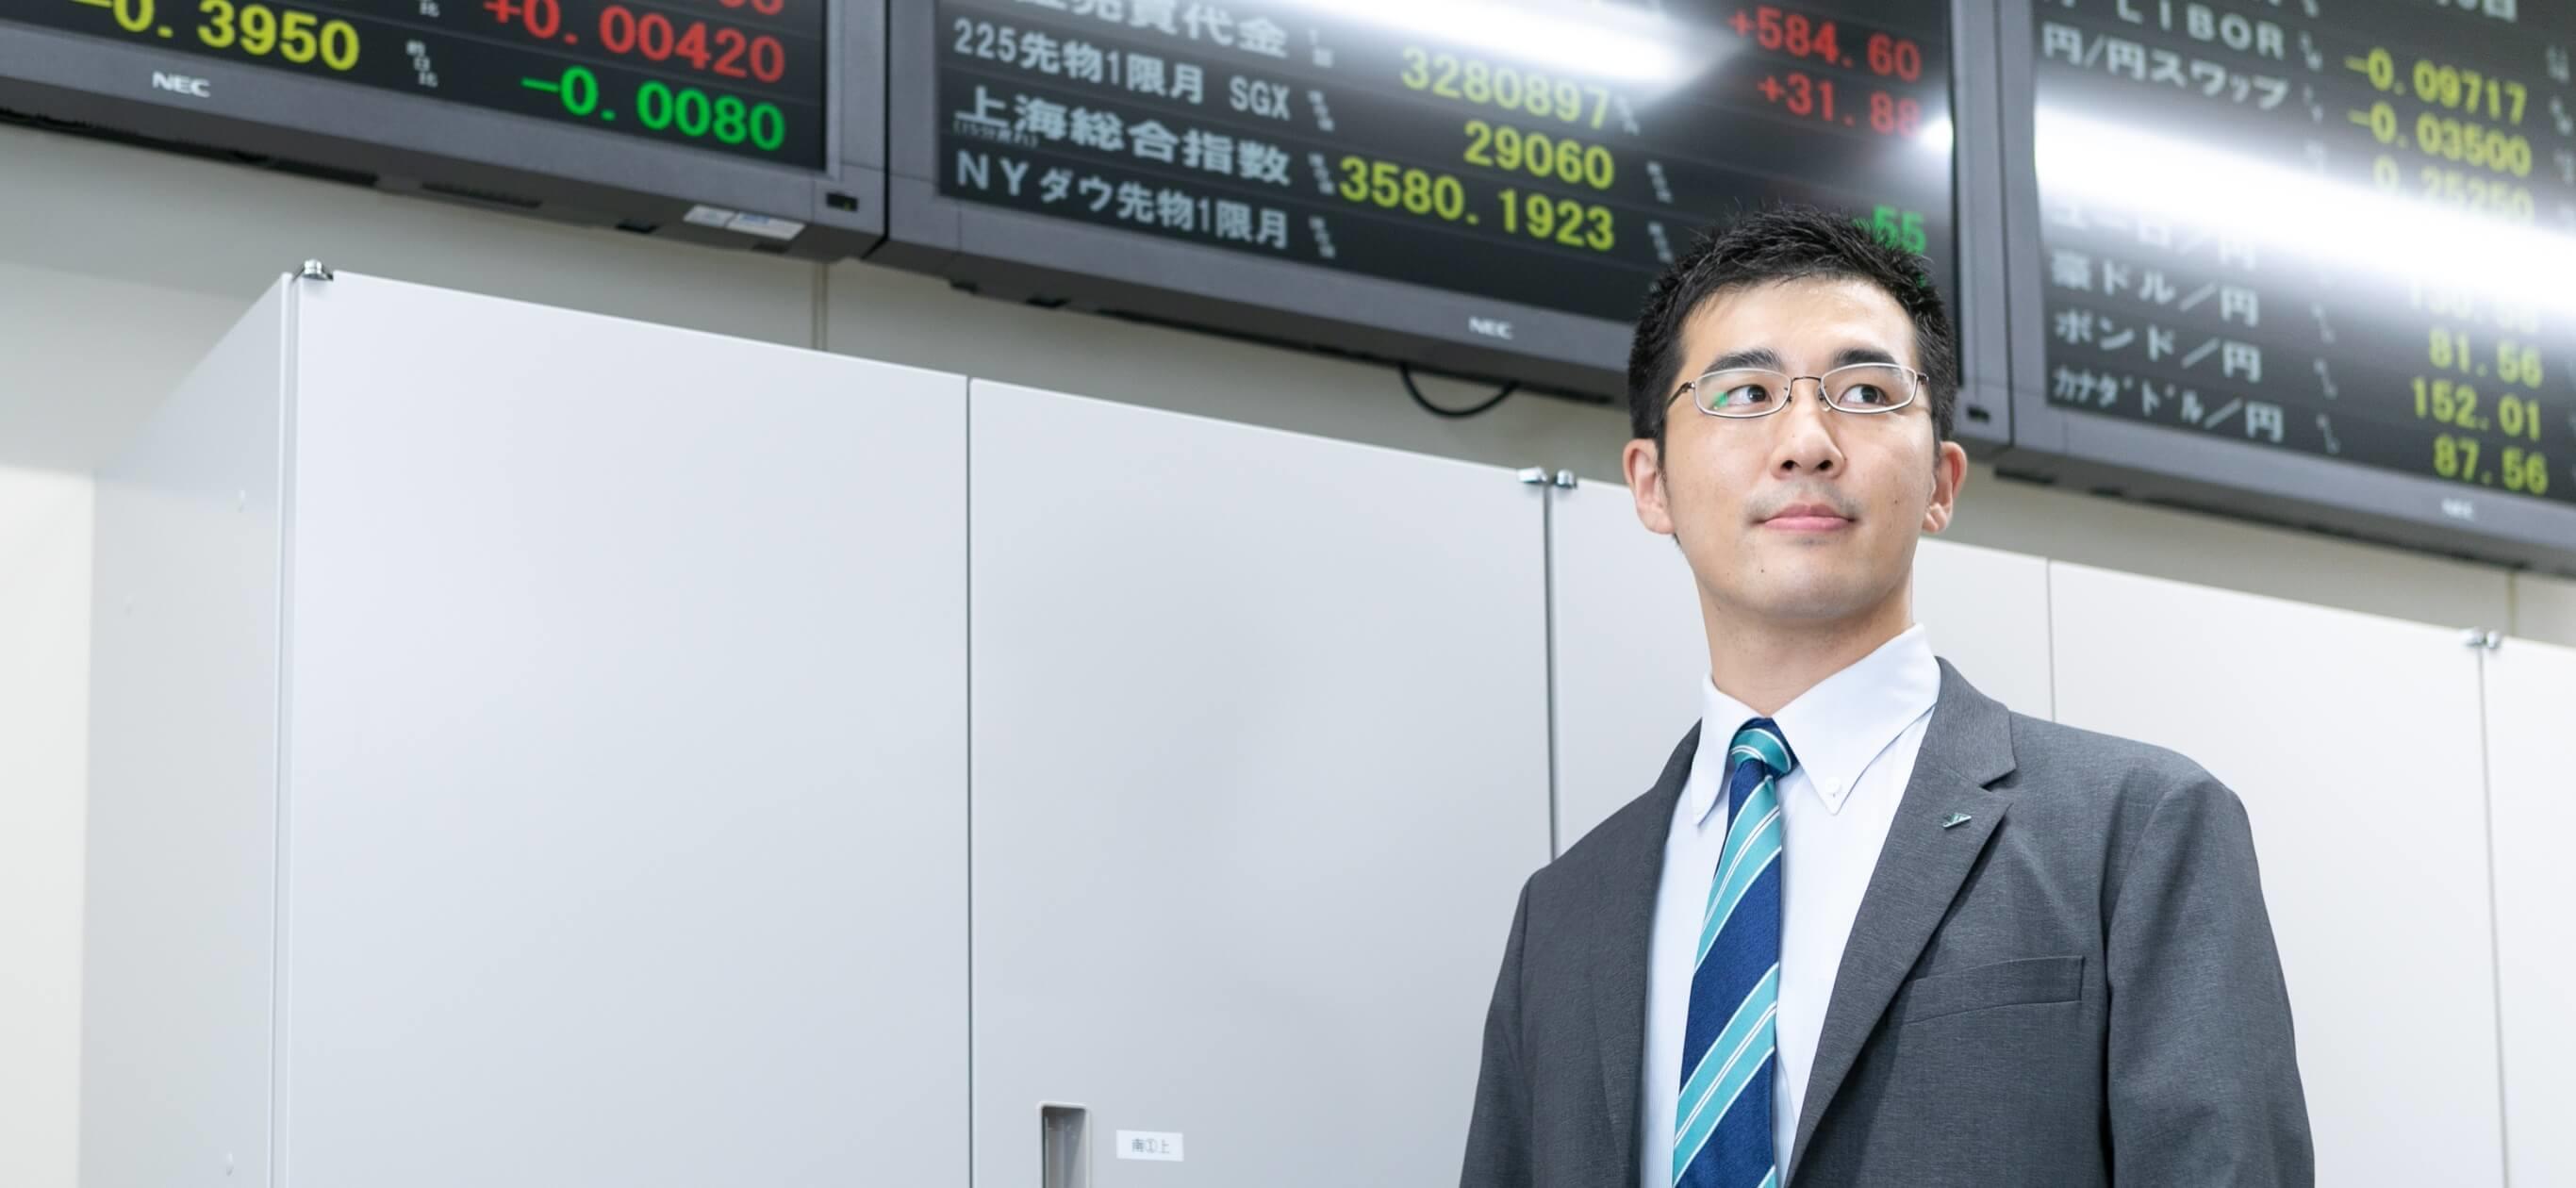 為替レート電光掲示板を背景に立つ長野県信連証券運用の男性職員